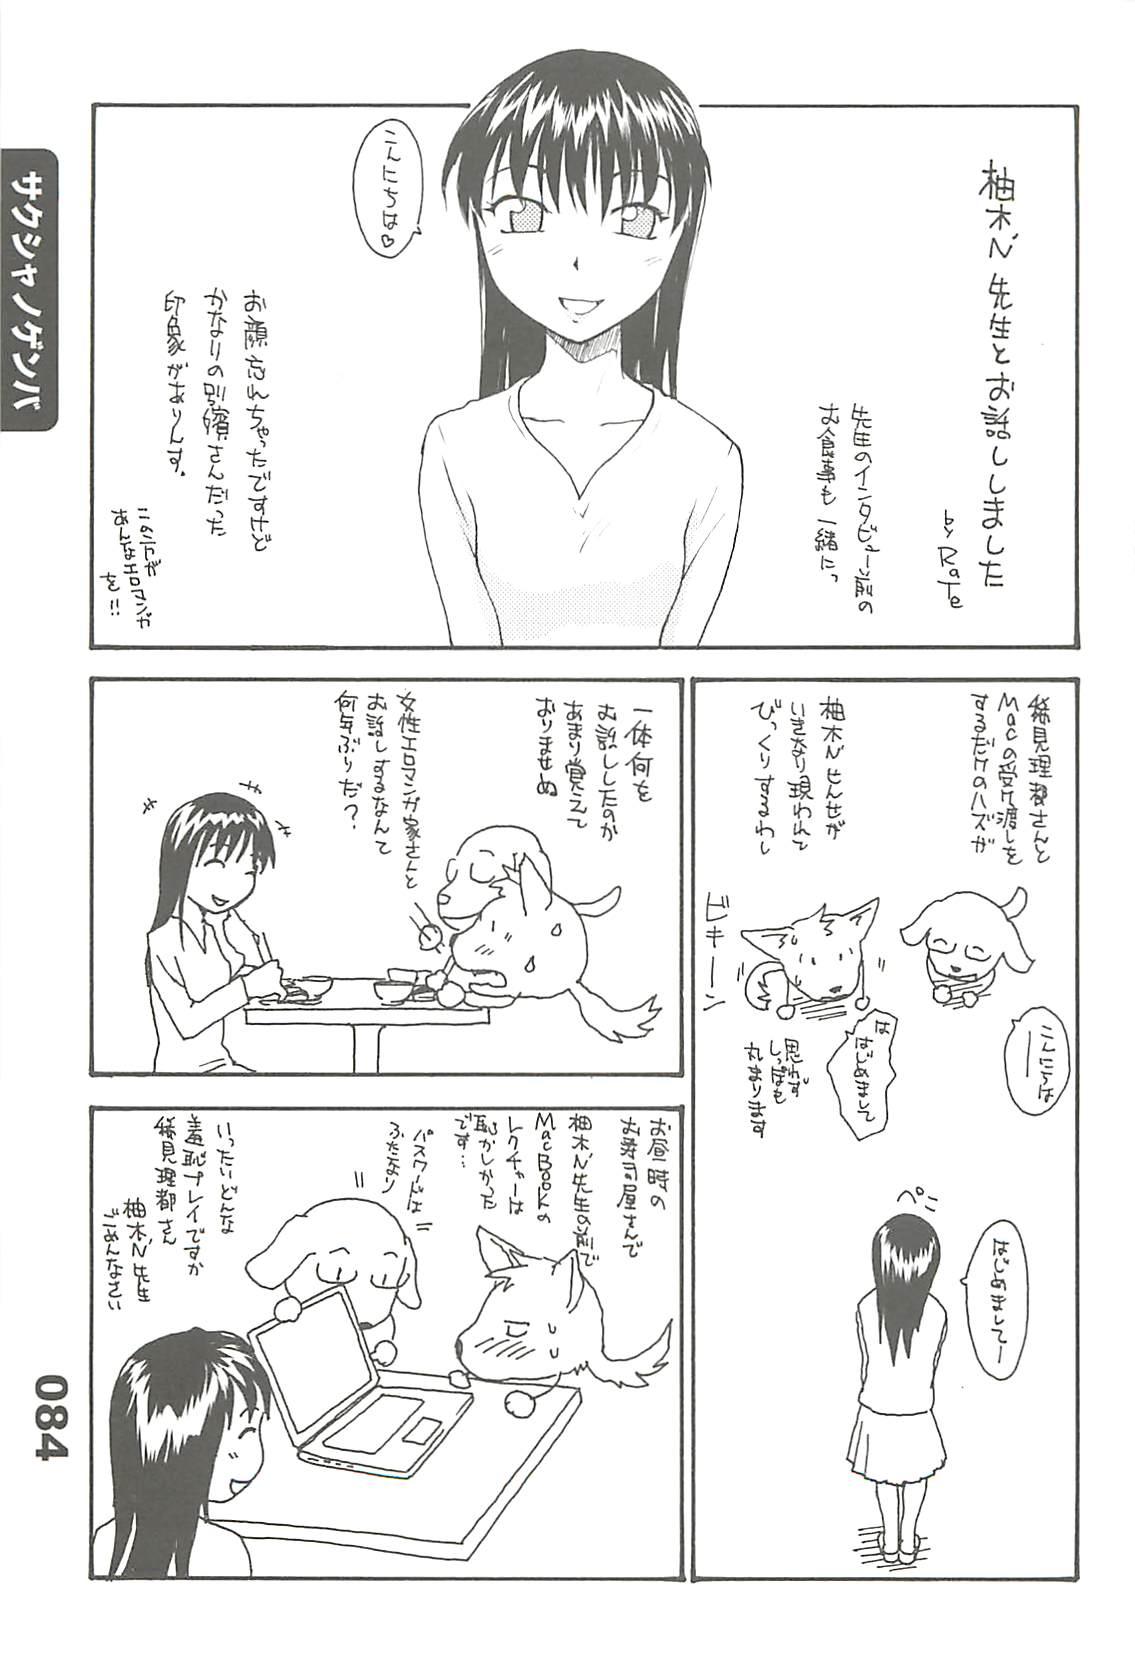 Ero-Manga no Genba Vol. 2 53